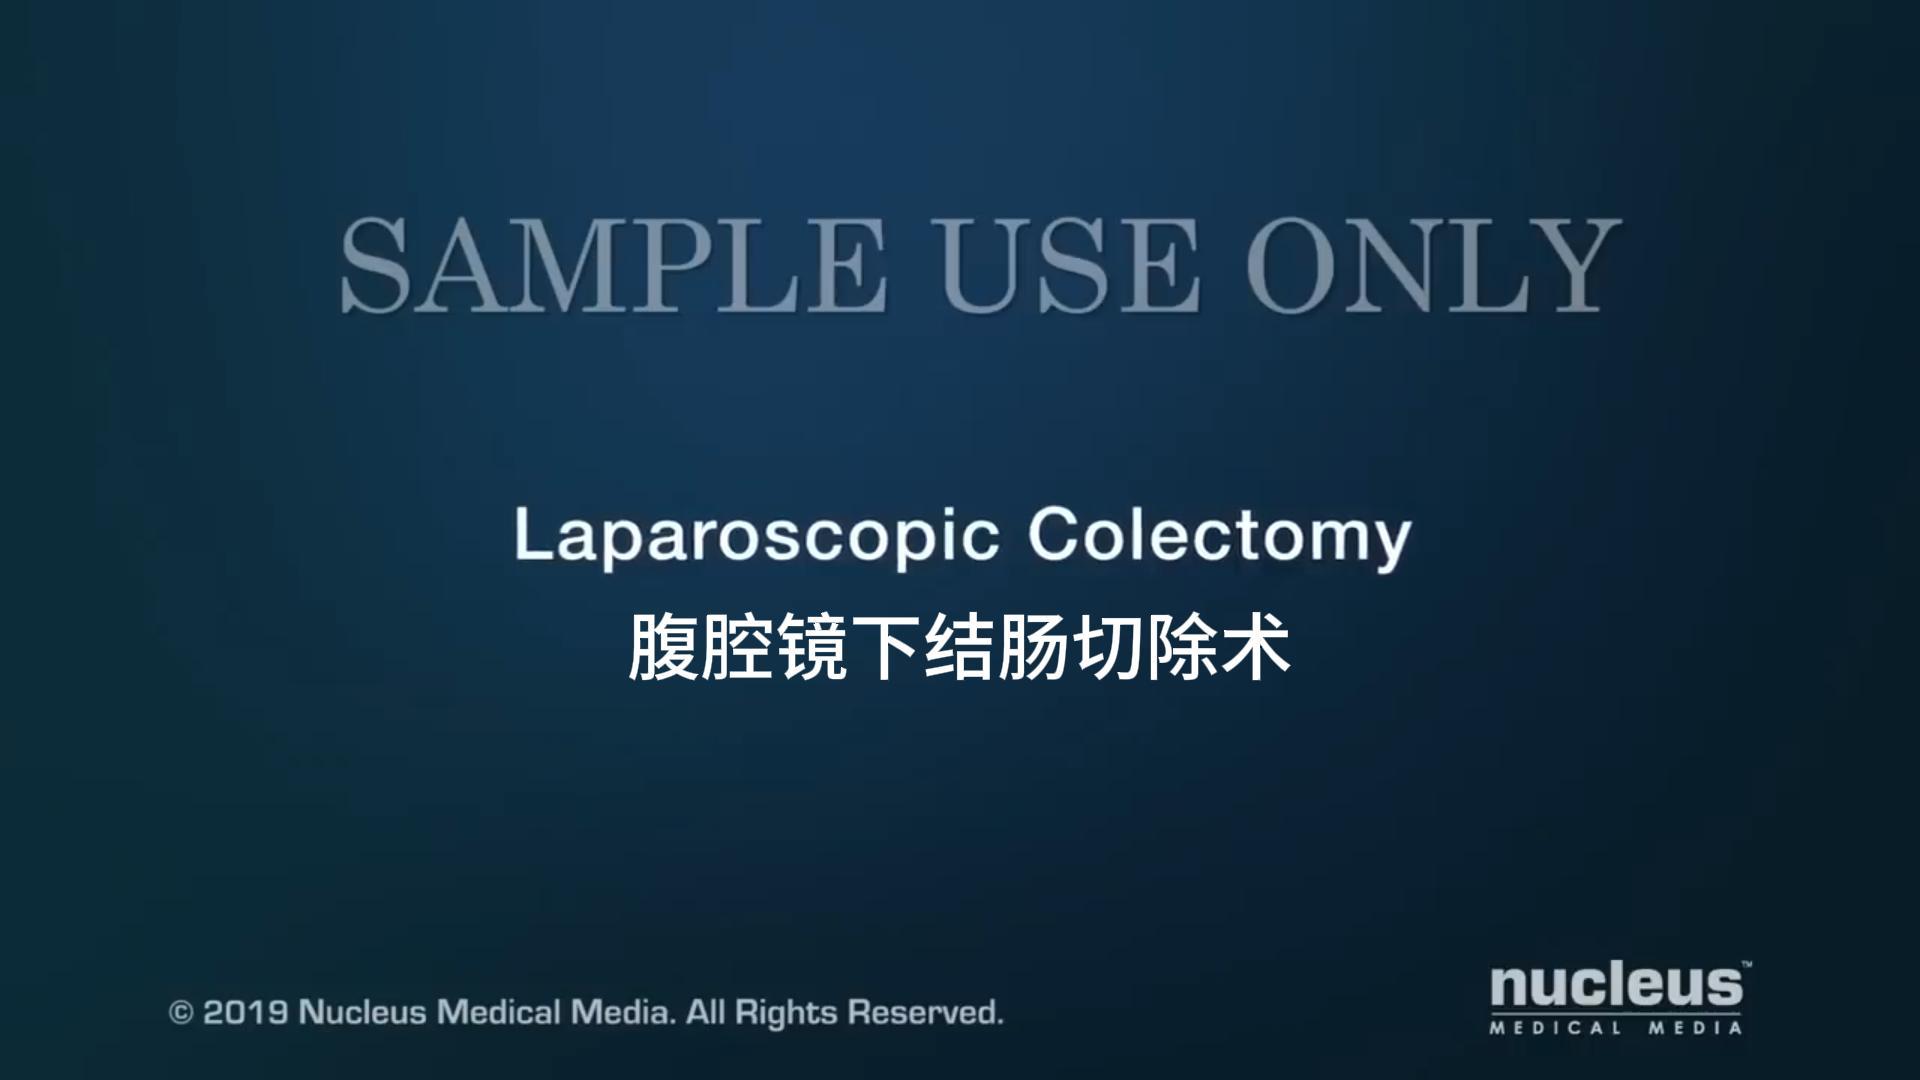 Laparoskopisk kolektomi: Minimalt invasiv metod för exakt och tydlig kirurgi